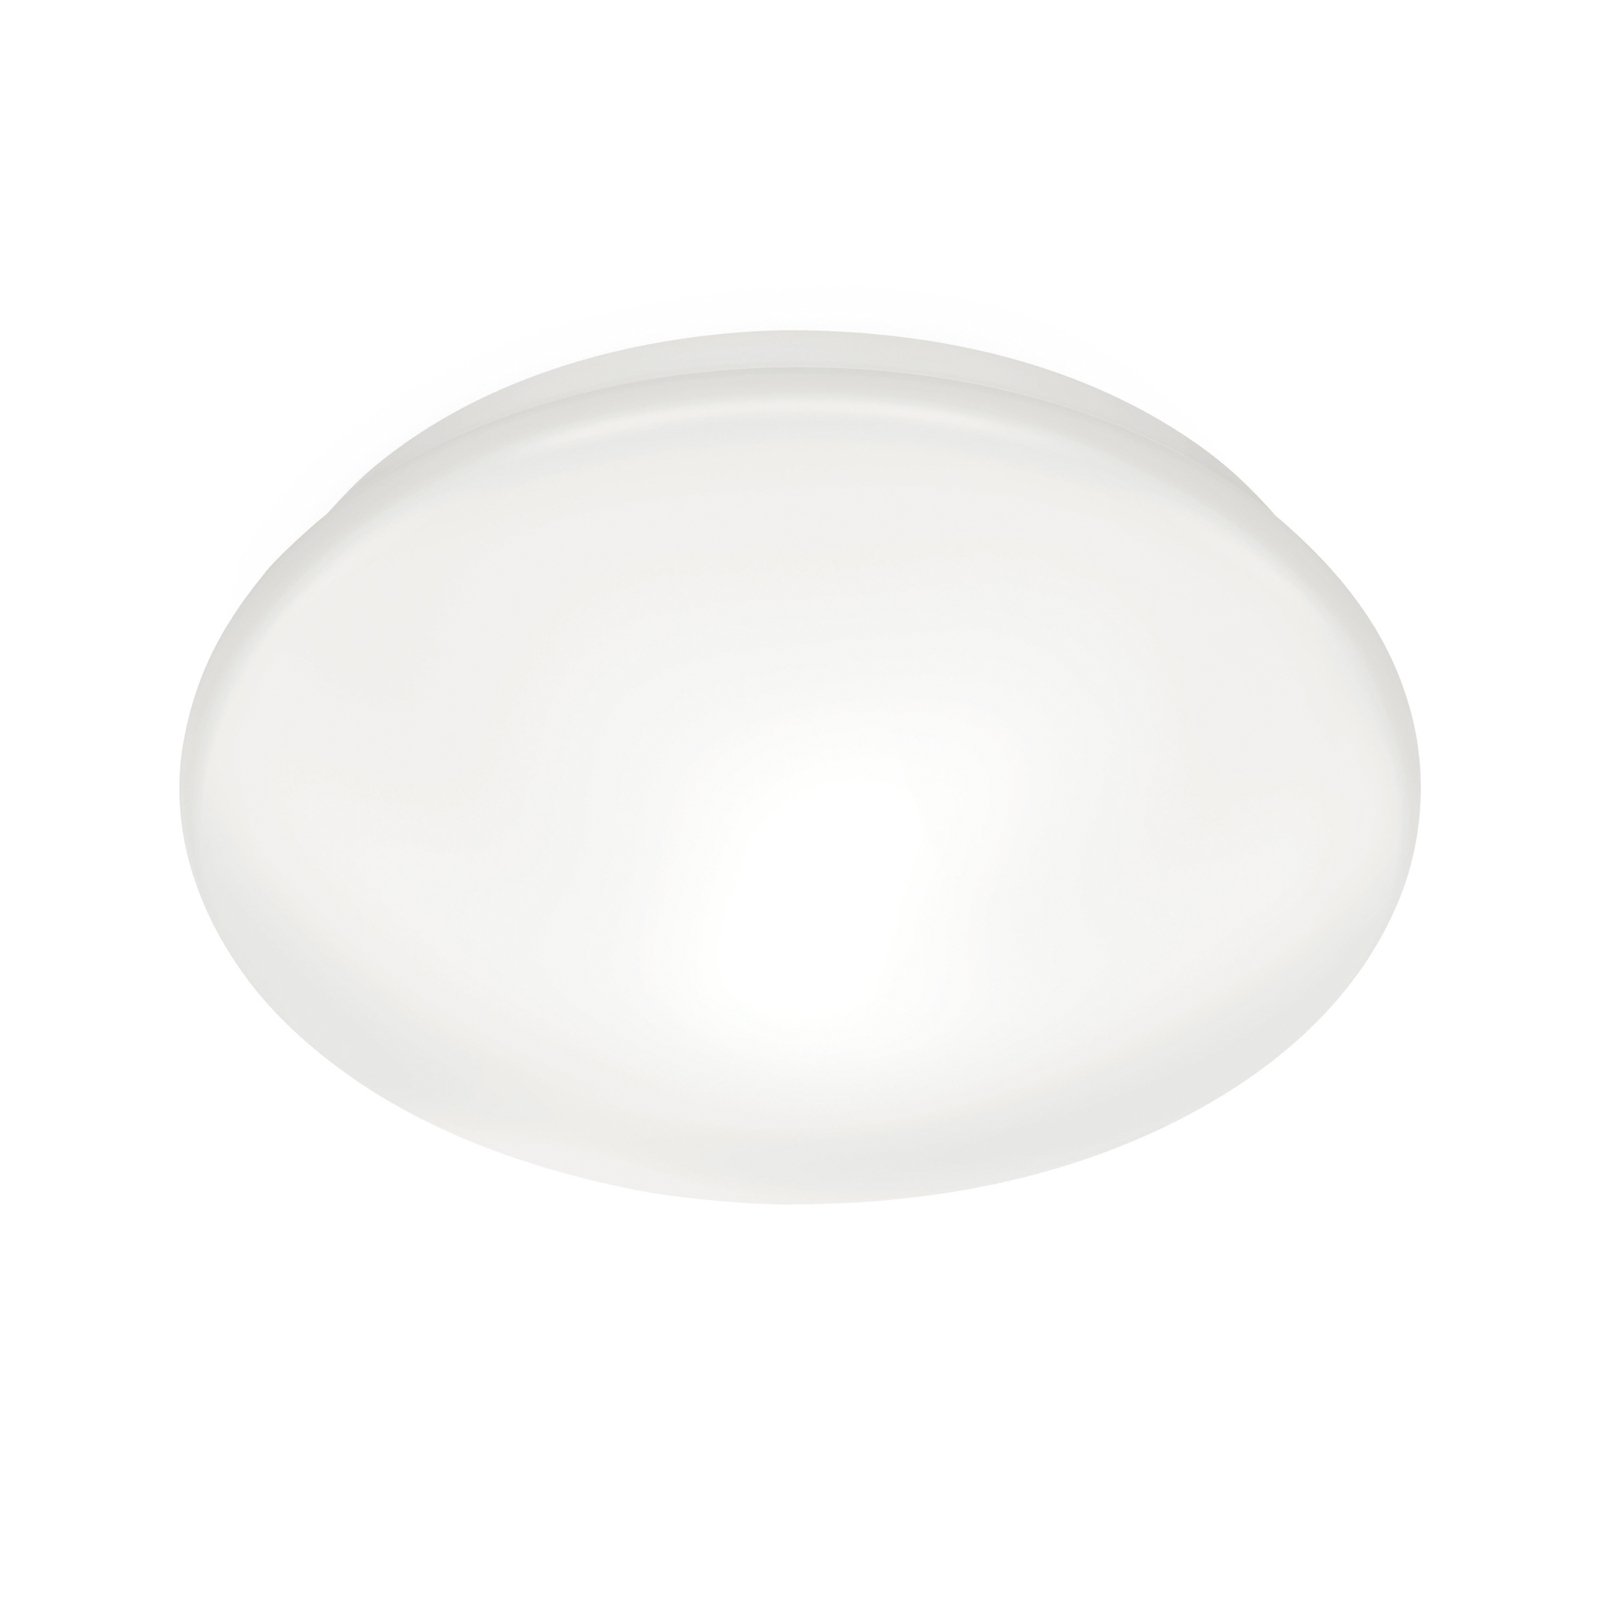 WiZ Adria stropné LED svietidlo, 17 W, teplá biela